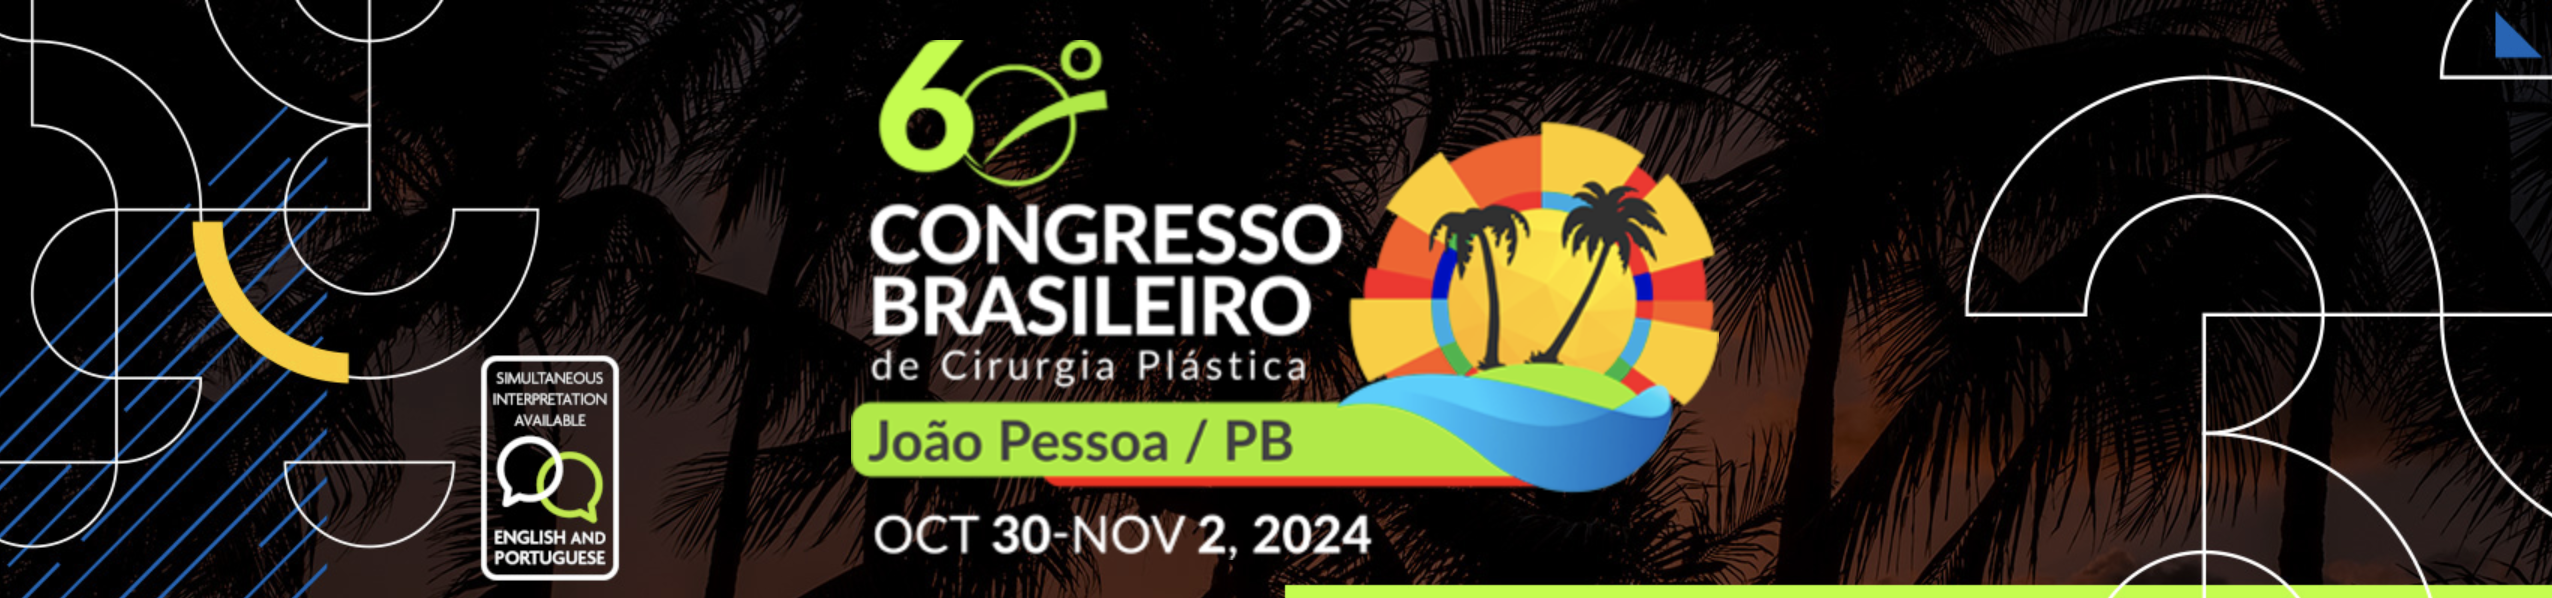 60º Congresso Brasileiro de Cirurgia Plástica